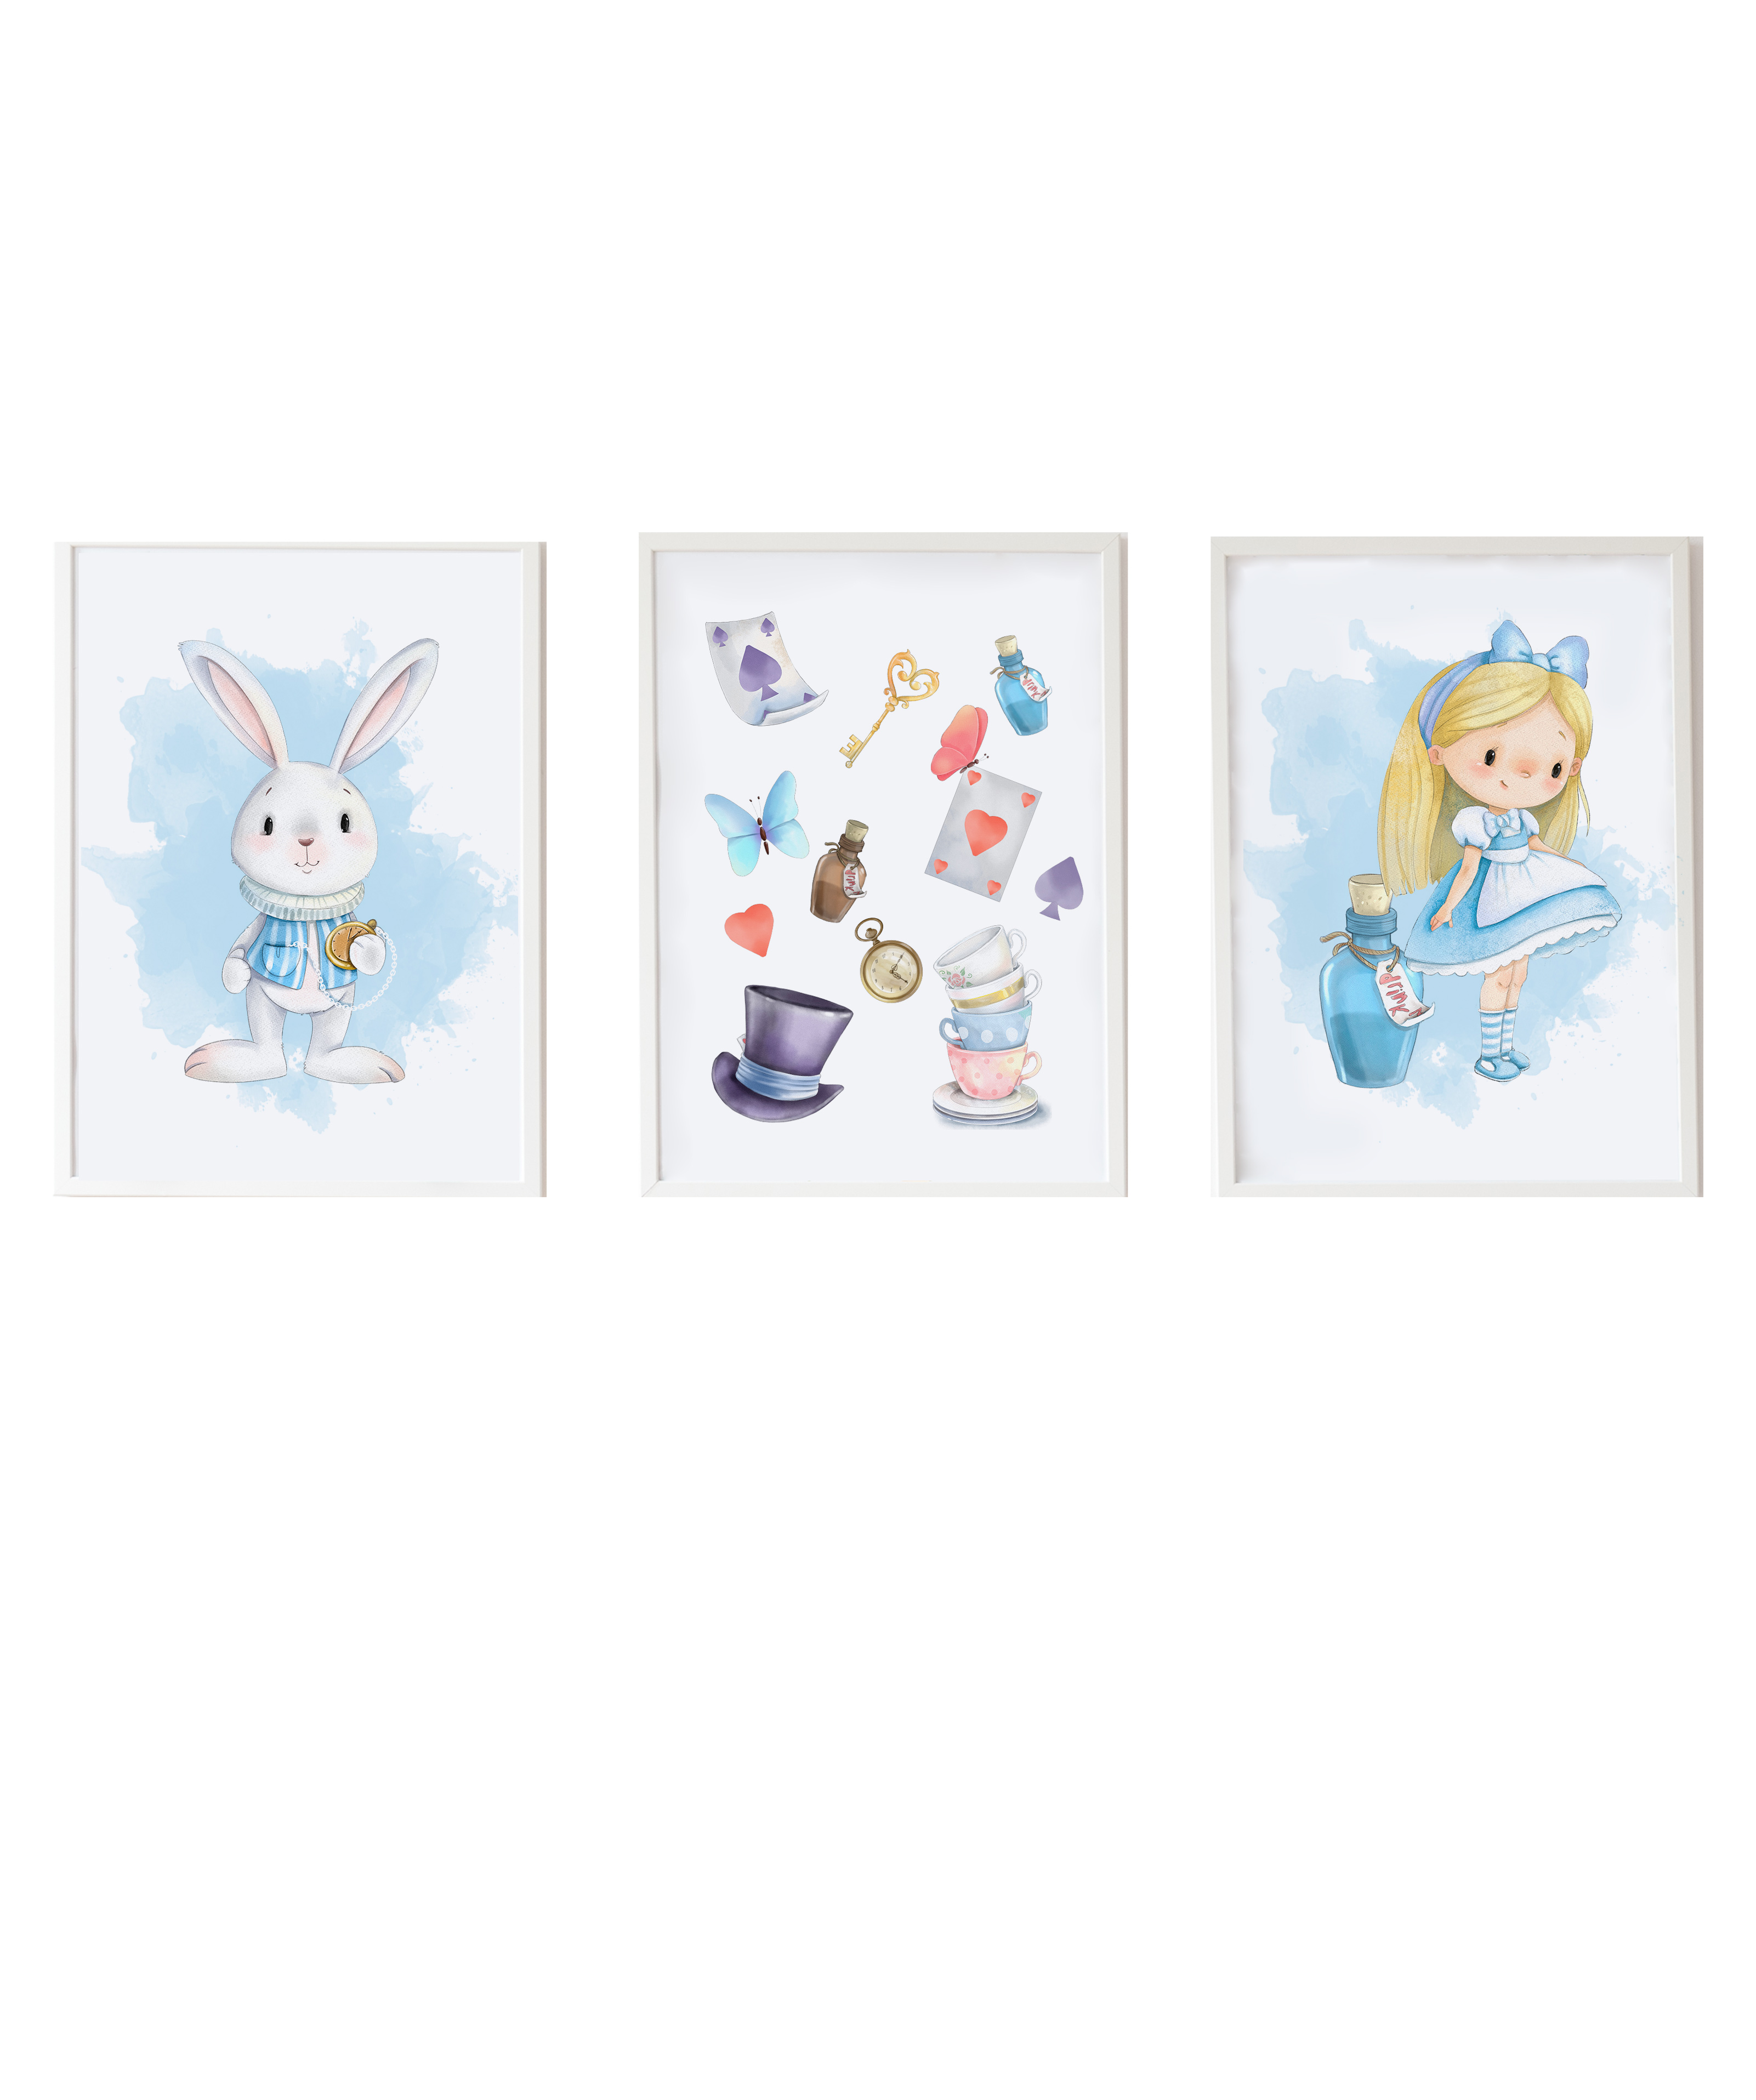 Pack encadré bois blanc impression le lapin Alice et objets 43X33 cm